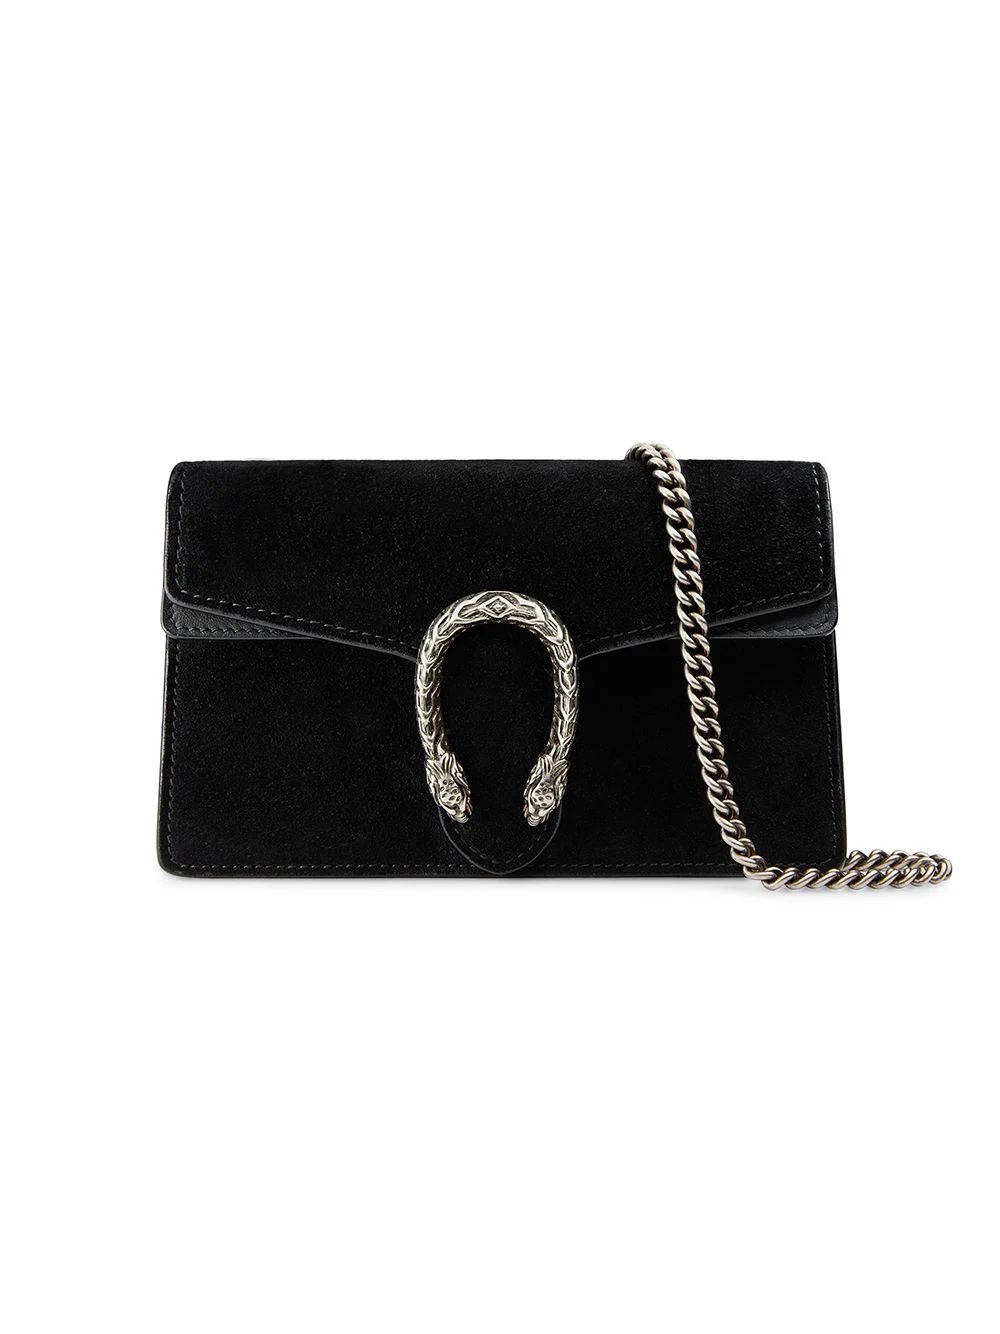 Gucci Dionysus suede super mini bag - Black | FarFetch US